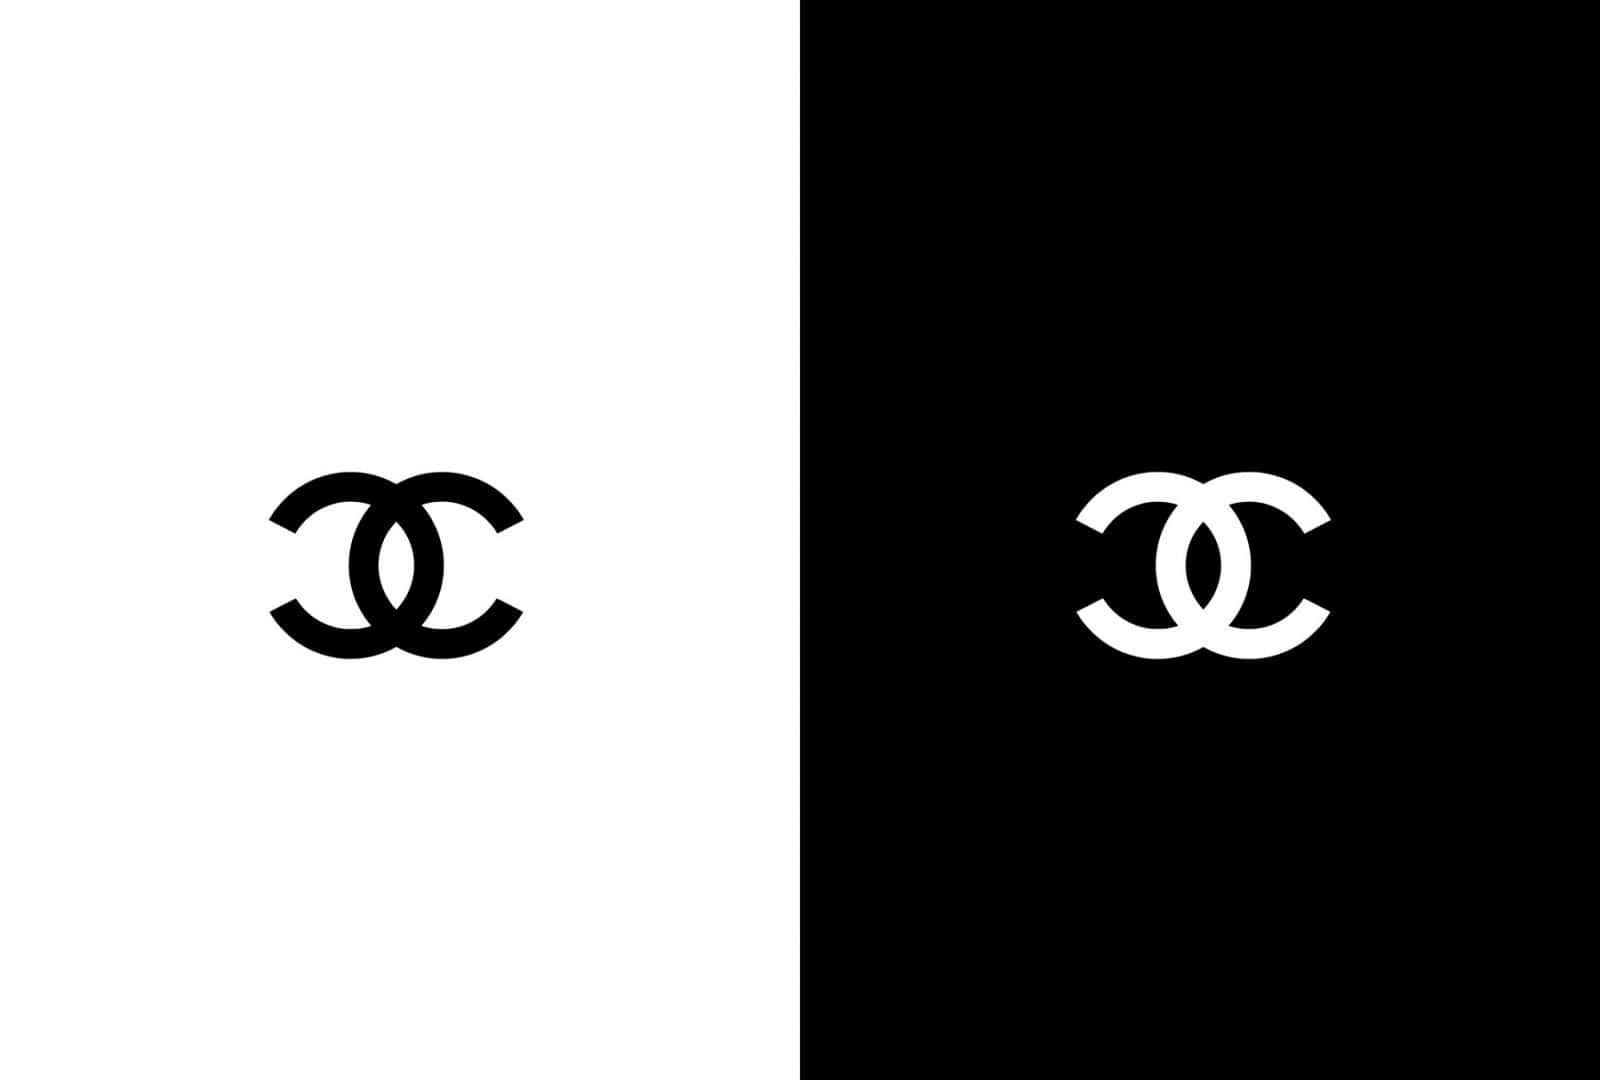 Logotypenför Lyxmärket Chanel